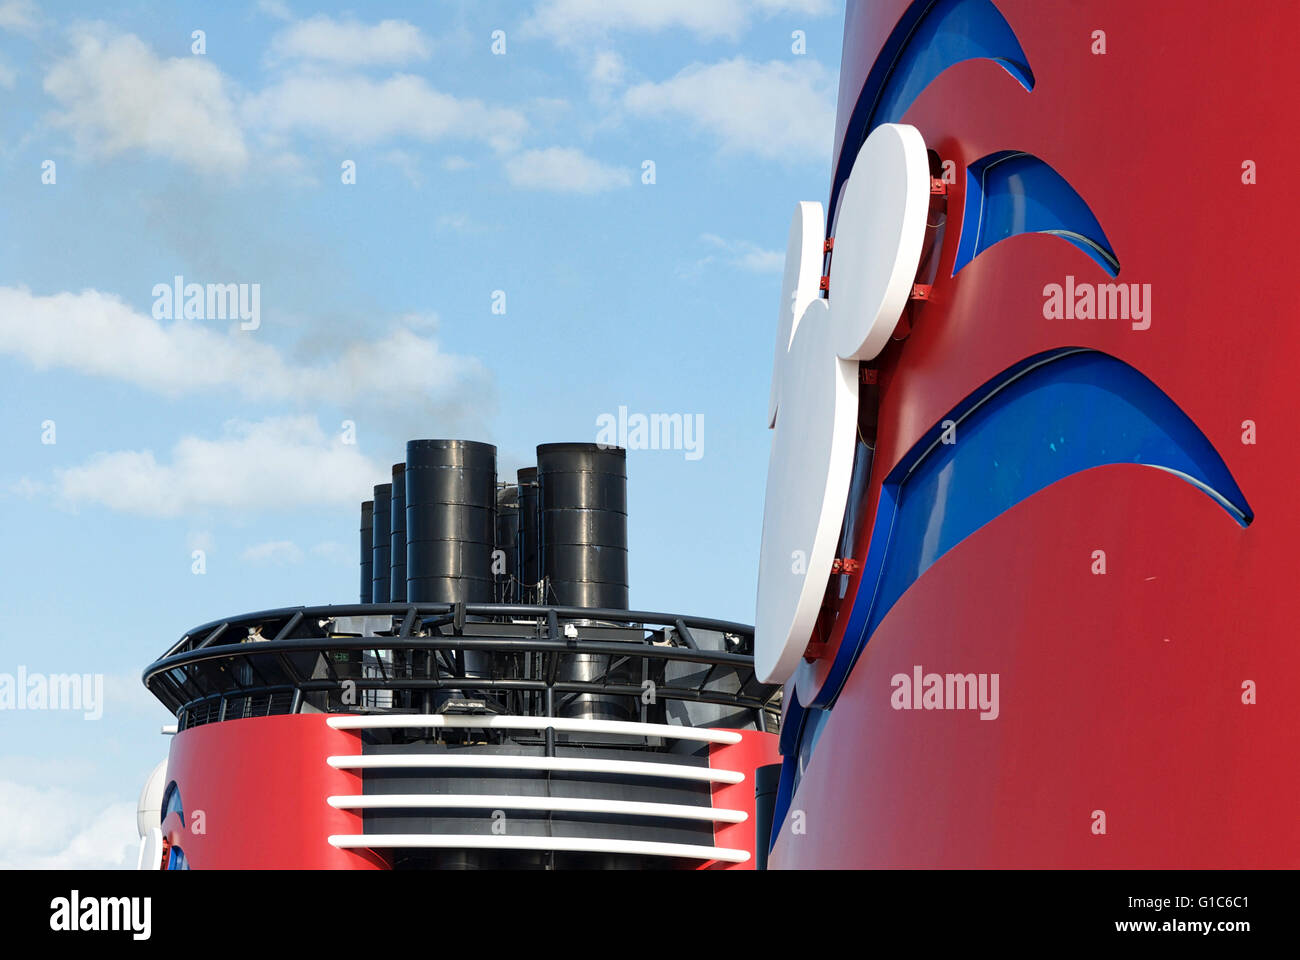 Nahaufnahme Bild der Schornstein von der Disney Dream Kreuzfahrtschiff während einer Kreuzfahrt zwischen den USA und den Bahamas. Stockfoto